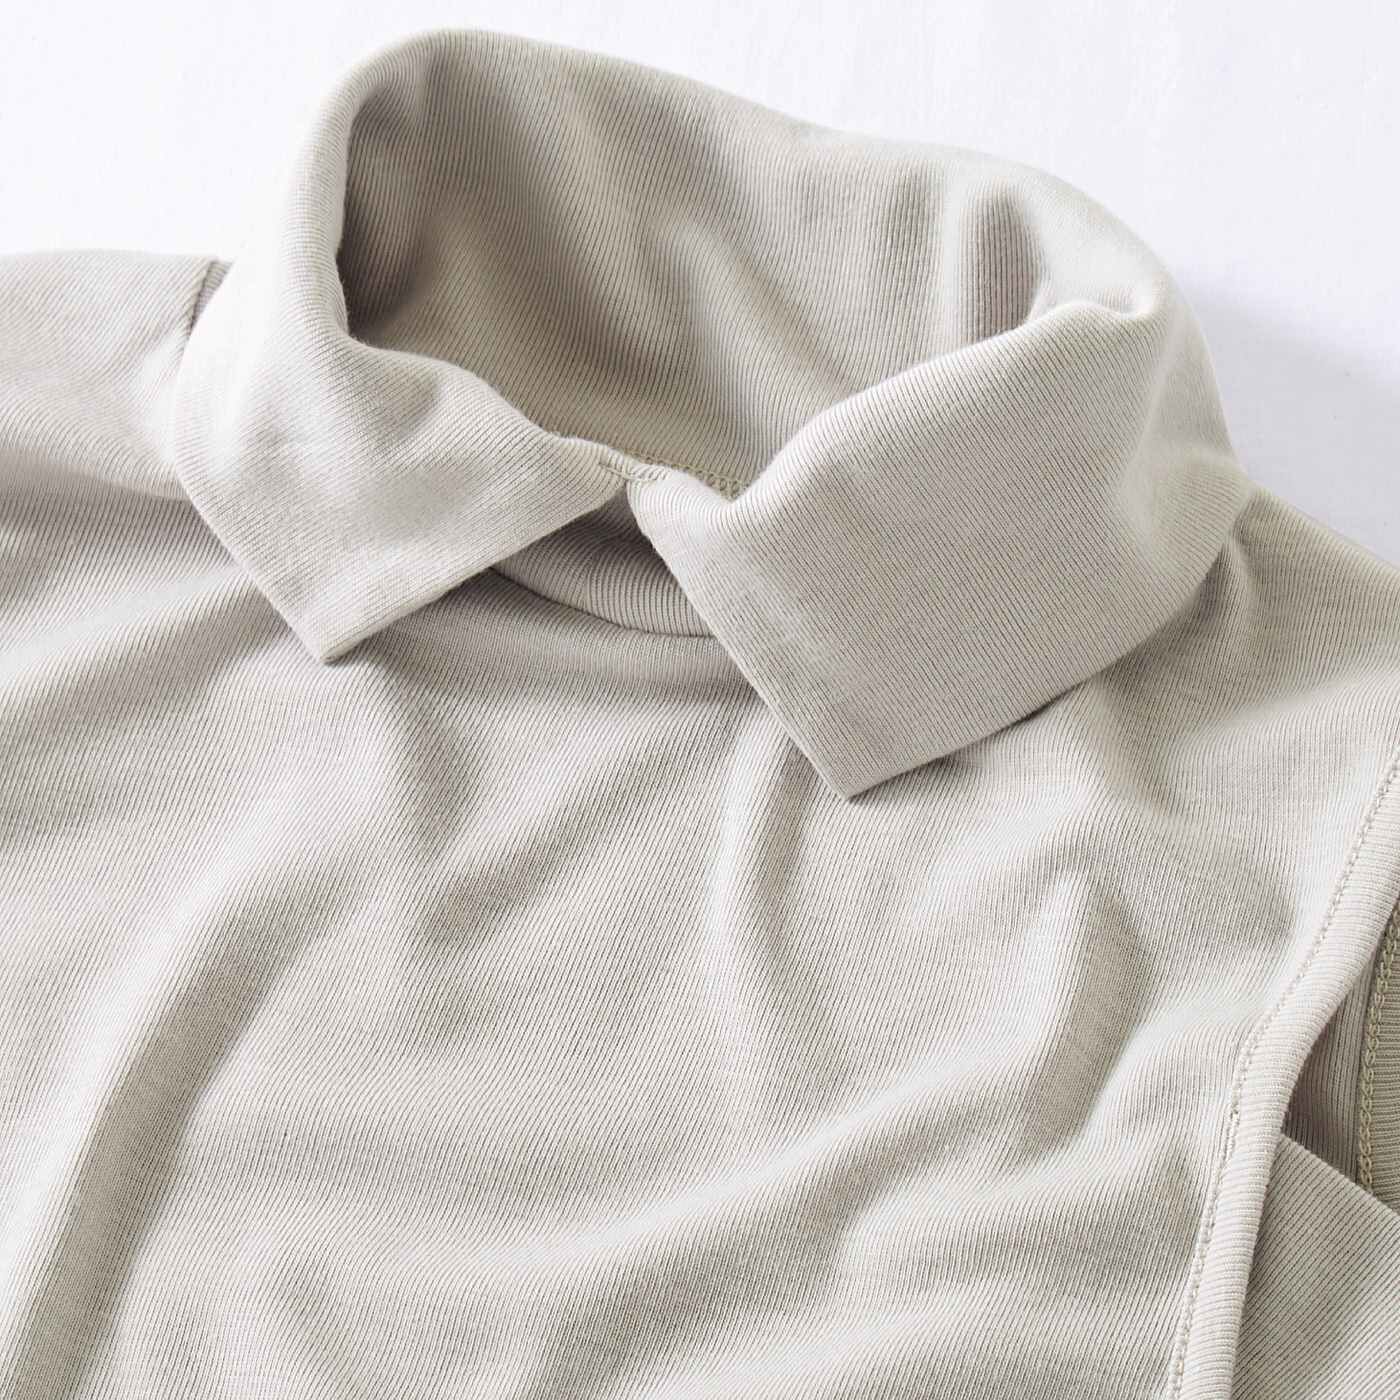 Real Stock|シャツ見えできちんと印象にチェンジ　衿付きタンクトップ〈グレー〉|伸縮性のあるカットソー素材で着心地も快適です。